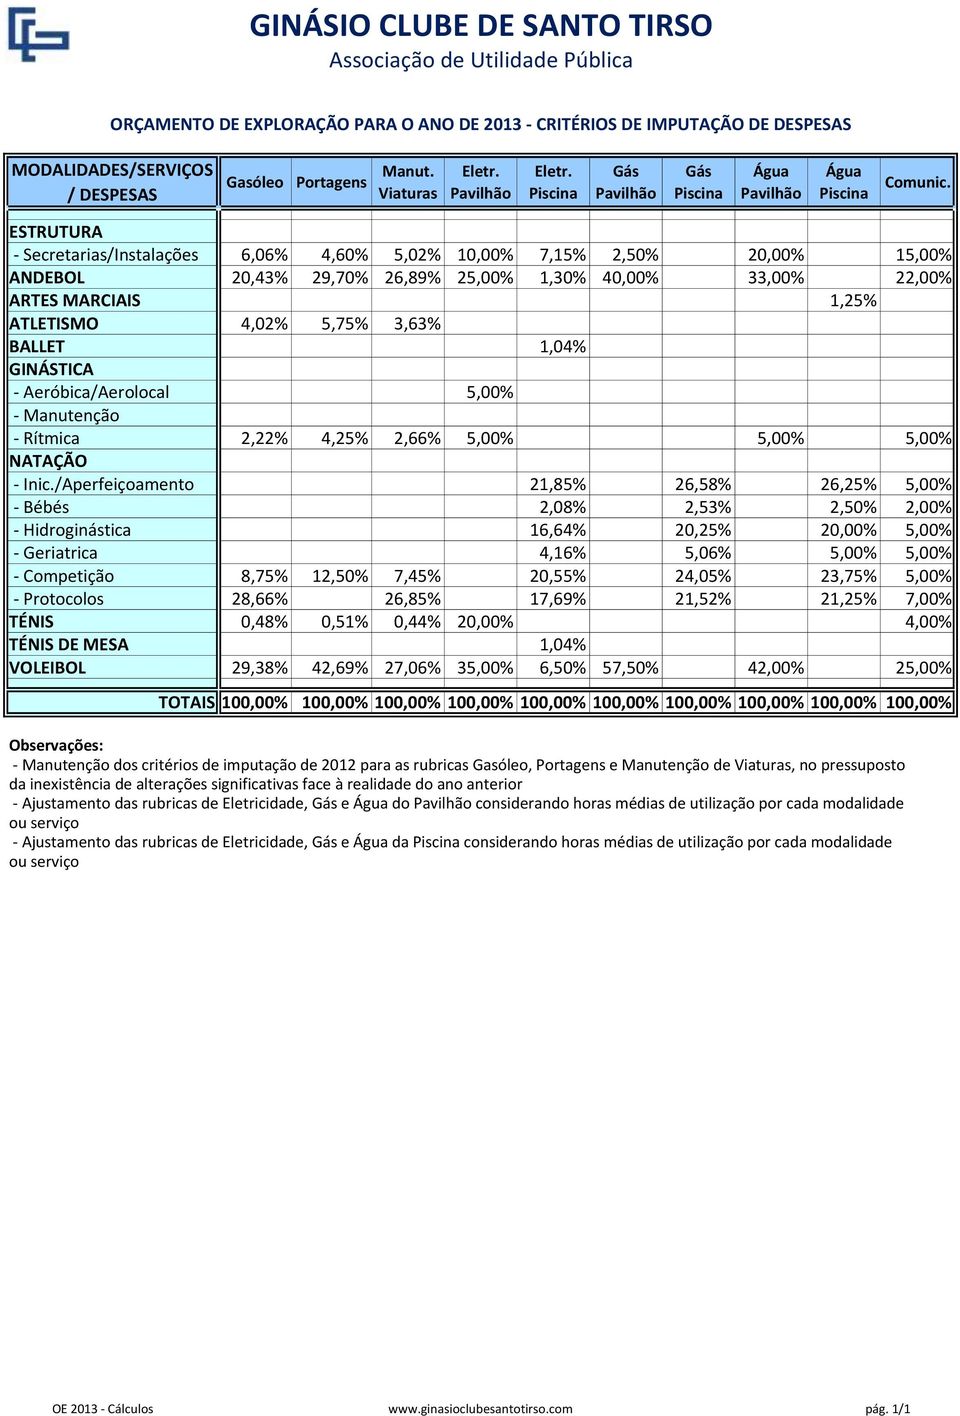 ESTRUTURA - Secretarias/Instalações 6,06% 4,60% 5,02% 10,00% 7,15% 2,50% 20,00% 15,00% ANDEBOL 20,43% 29,70% 26,89% 25,00% 1,30% 40,00% 33,00% 22,00% ARTES MARCIAIS 1,25% ATLETISMO 4,02% 5,75% 3,63%